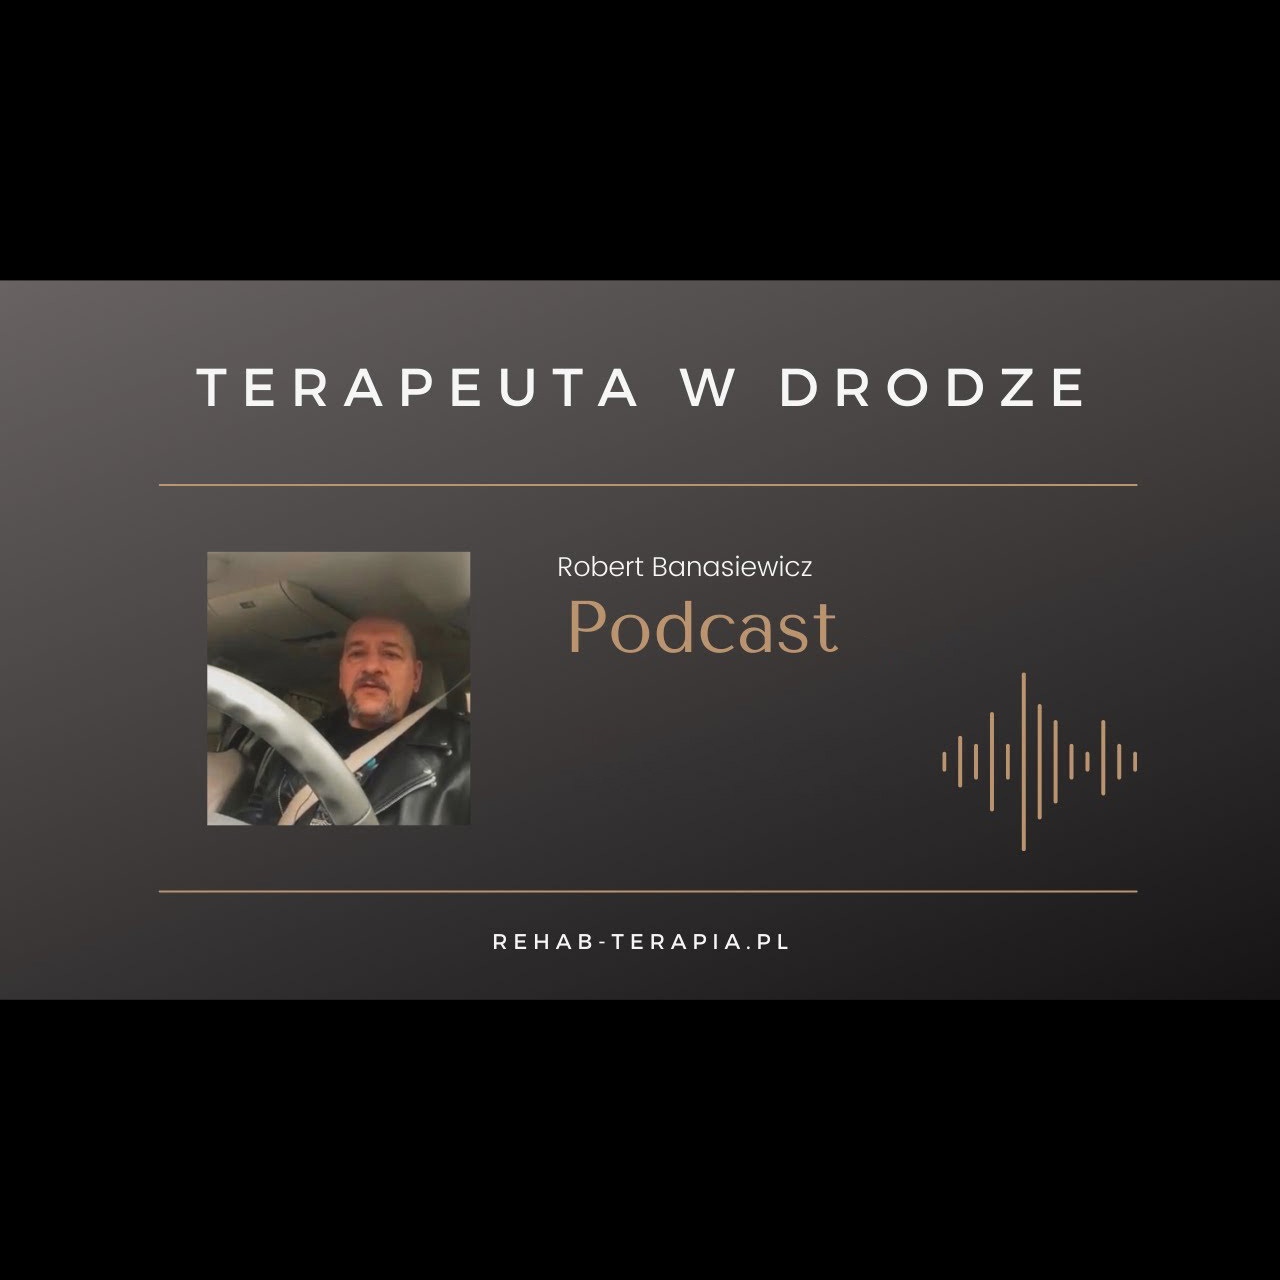 Podcasty terapeuta w drodze 5